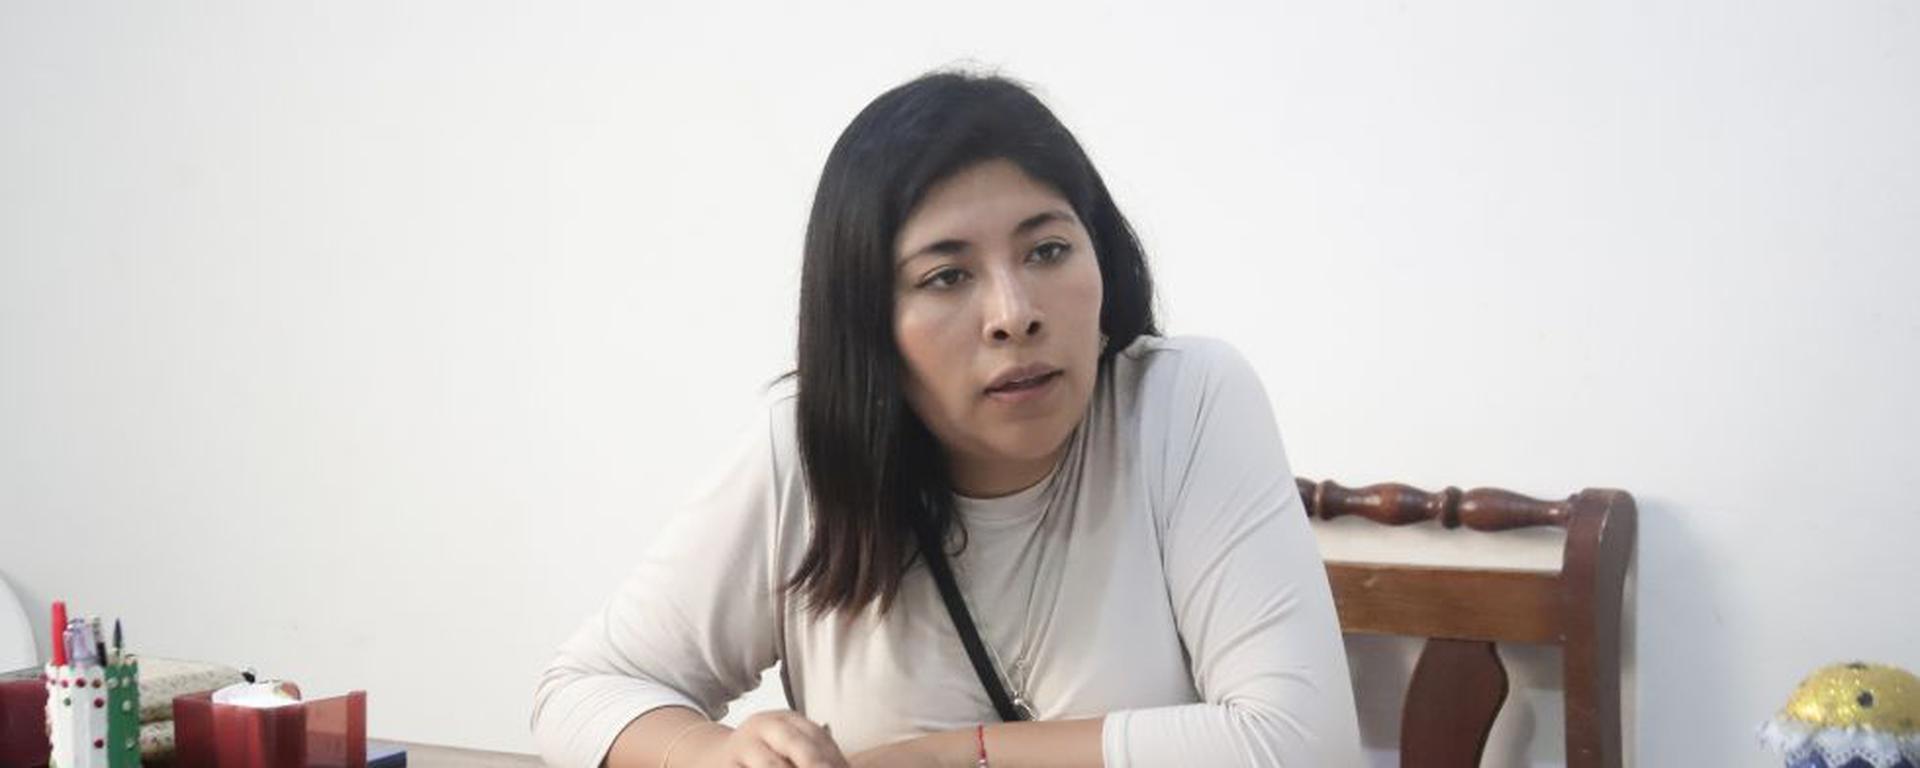 Betssy Chavez: Contraloría evalúa perfiles de allegados a primera ministra beneficiados con contratos